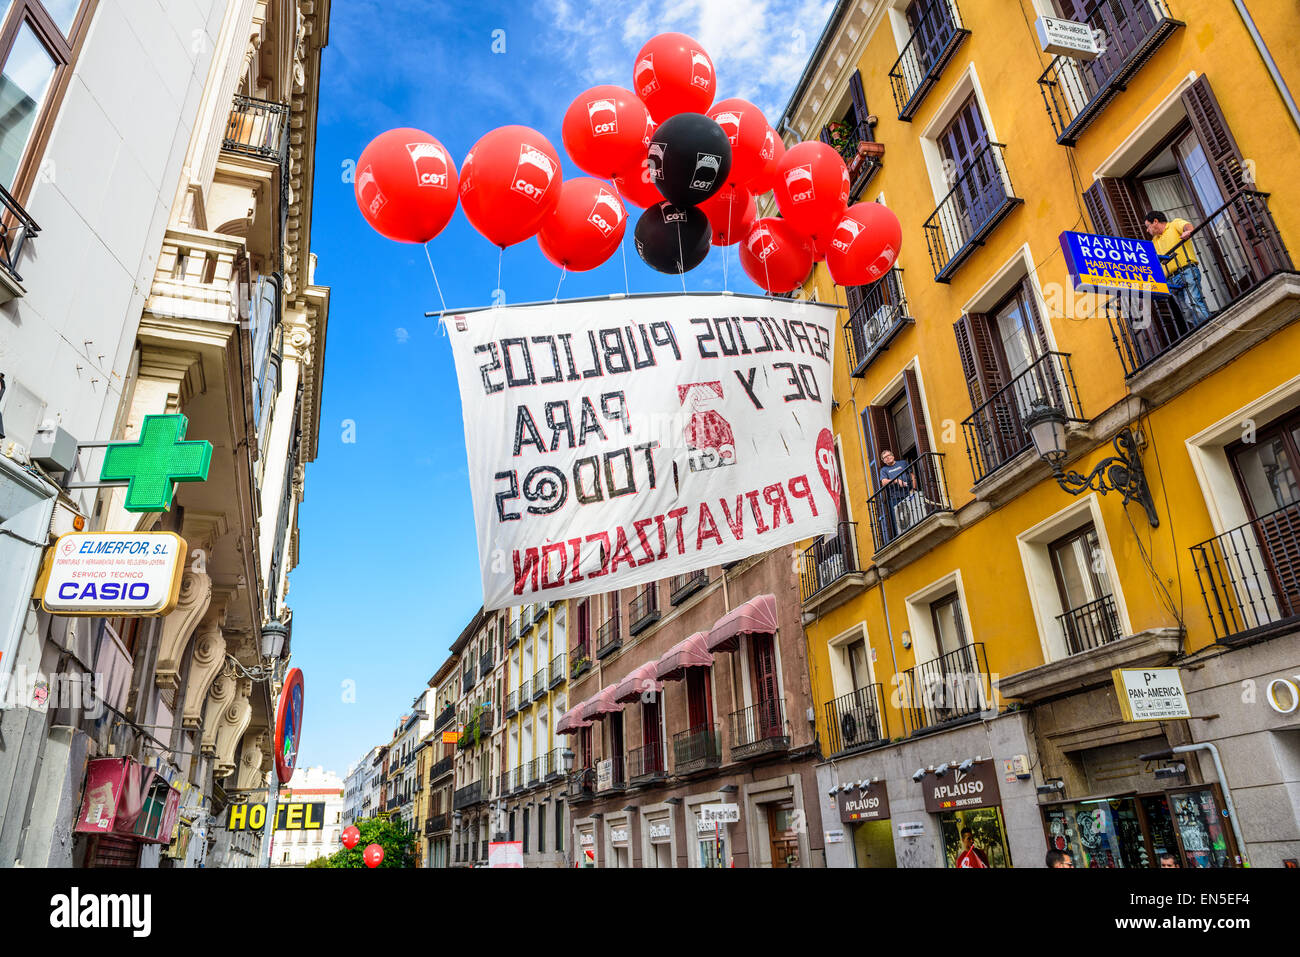 Ein Banner, getragen von Luftballons protestiert die Privatisierung der staatlichen Flughafenbetreiber Aena Aeropuertos. Stockfoto